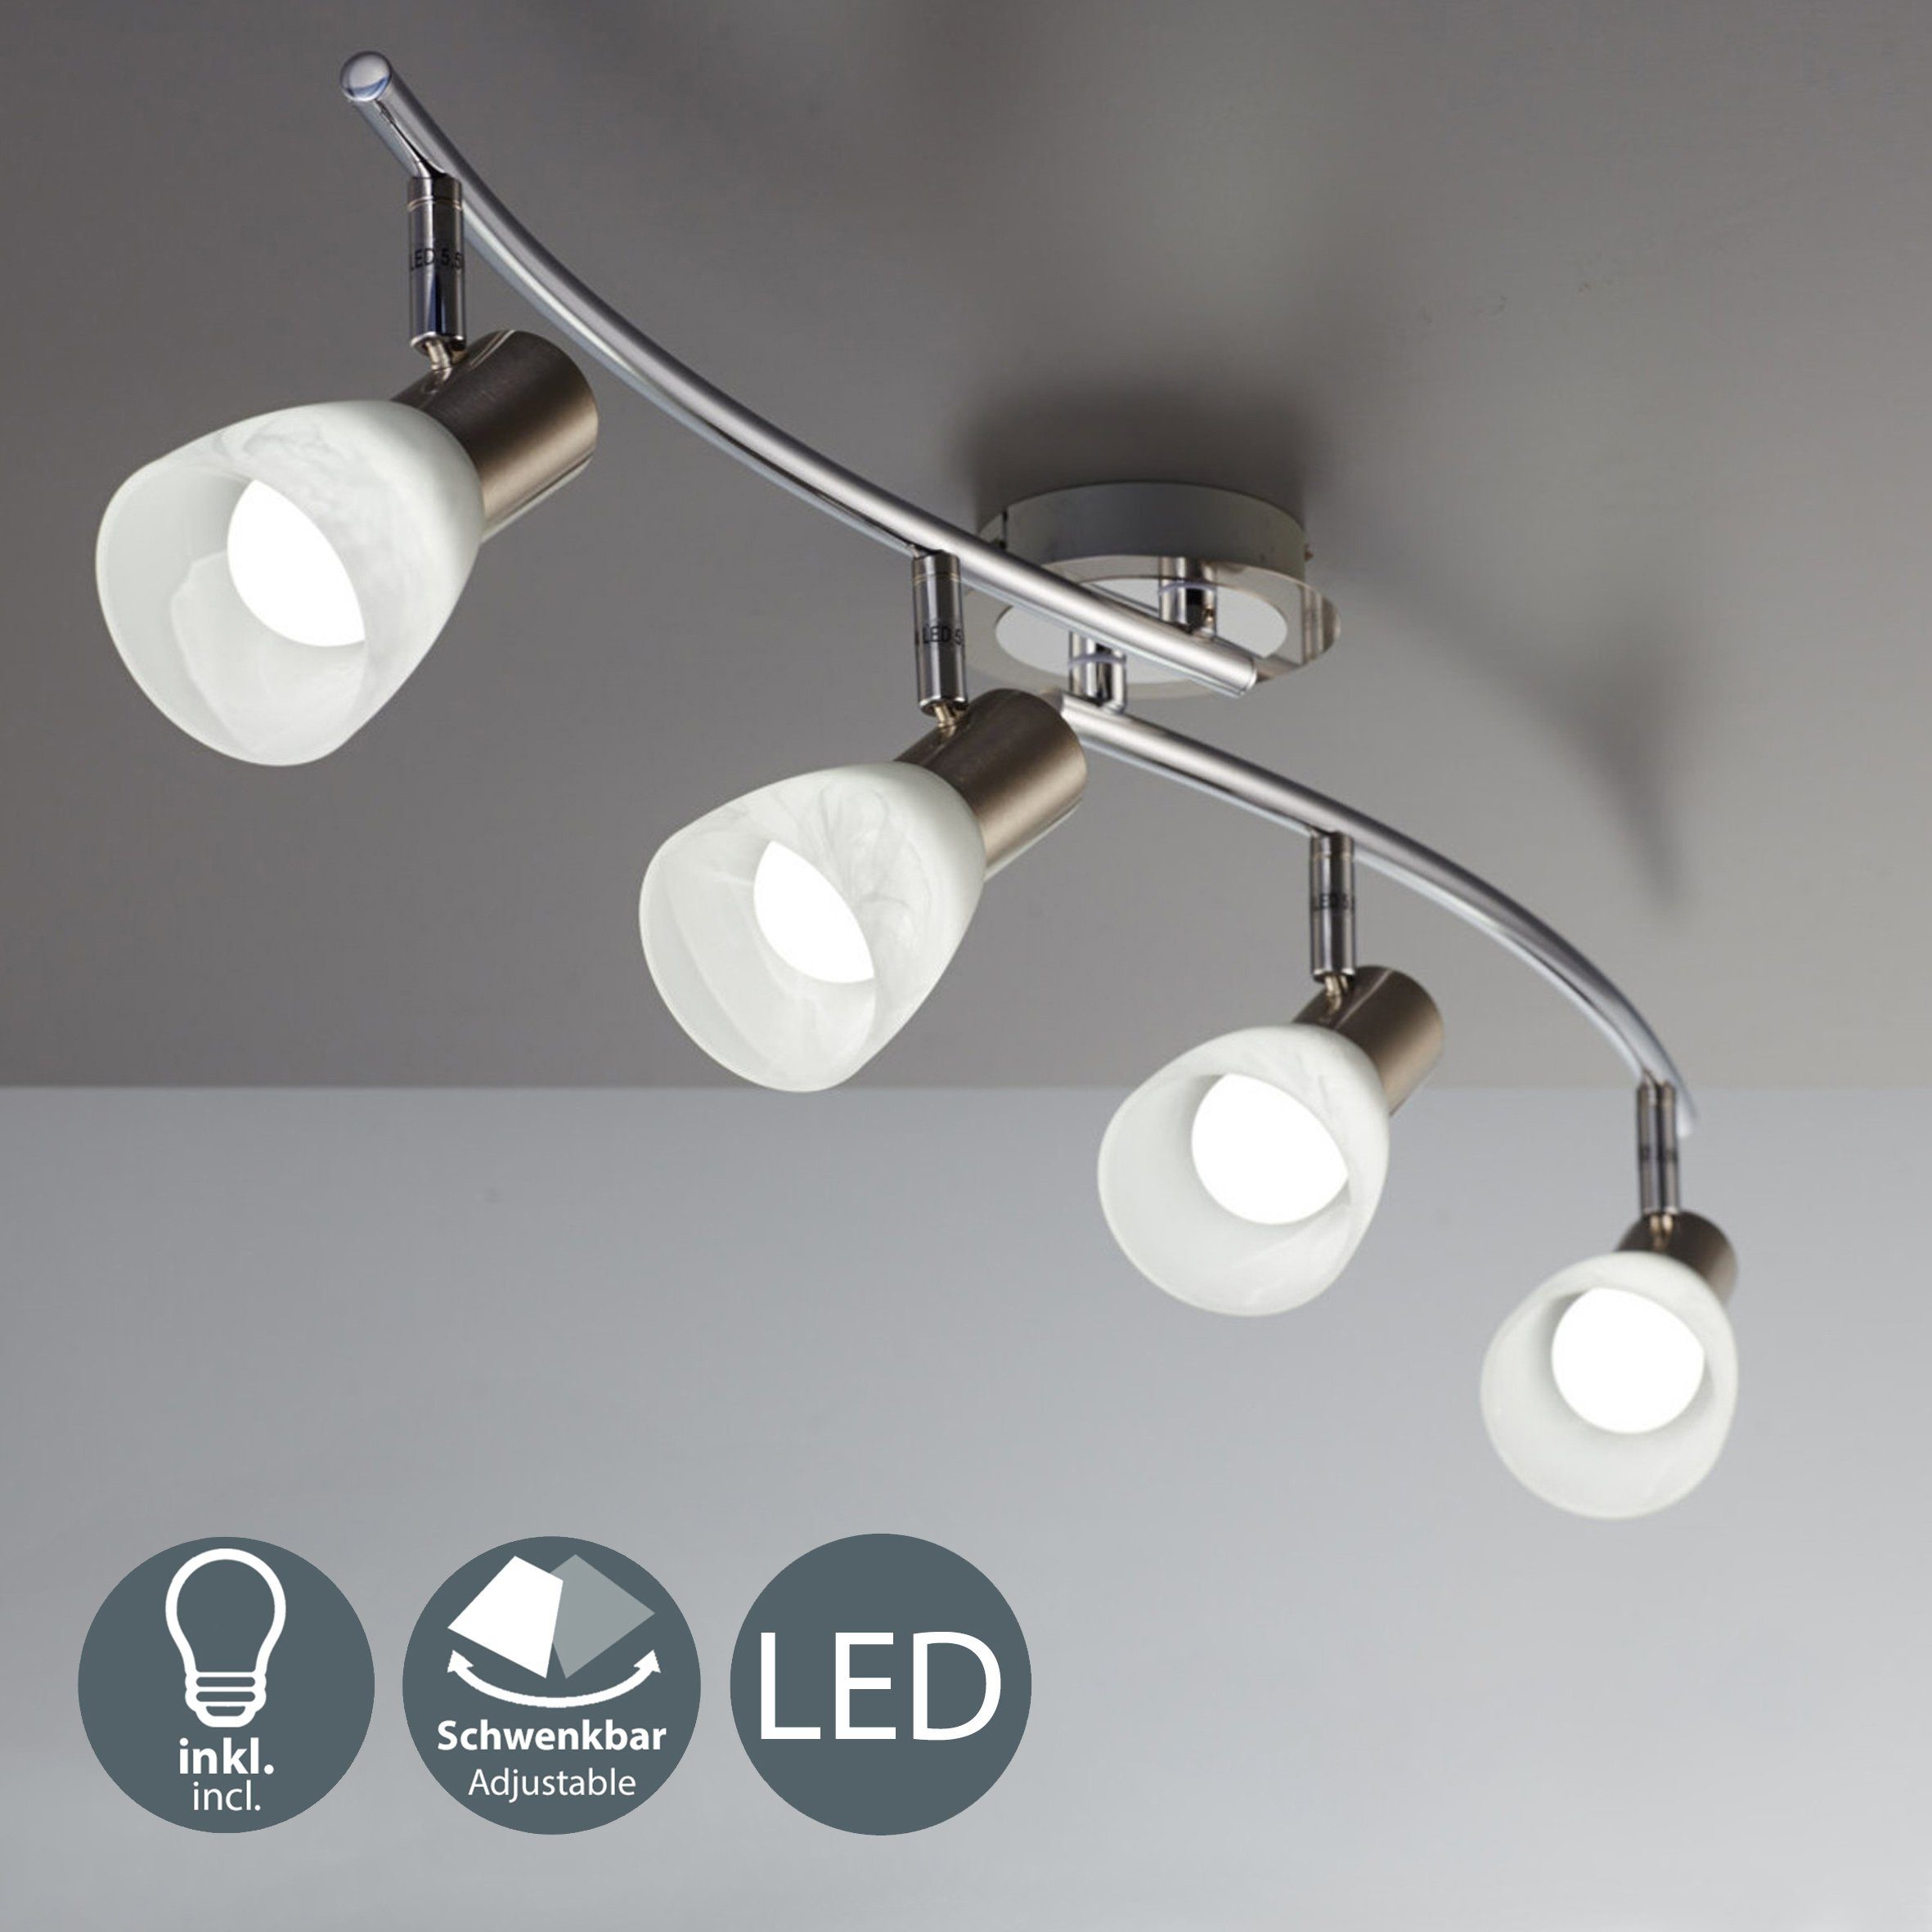 Leuchtmittel LED schwenkbar Warmweiß, Wohnzimmer E14 wechselbar, Spot B.K.Licht Metall LED Glas Leuchte Deckenlampe Deckenstrahler,